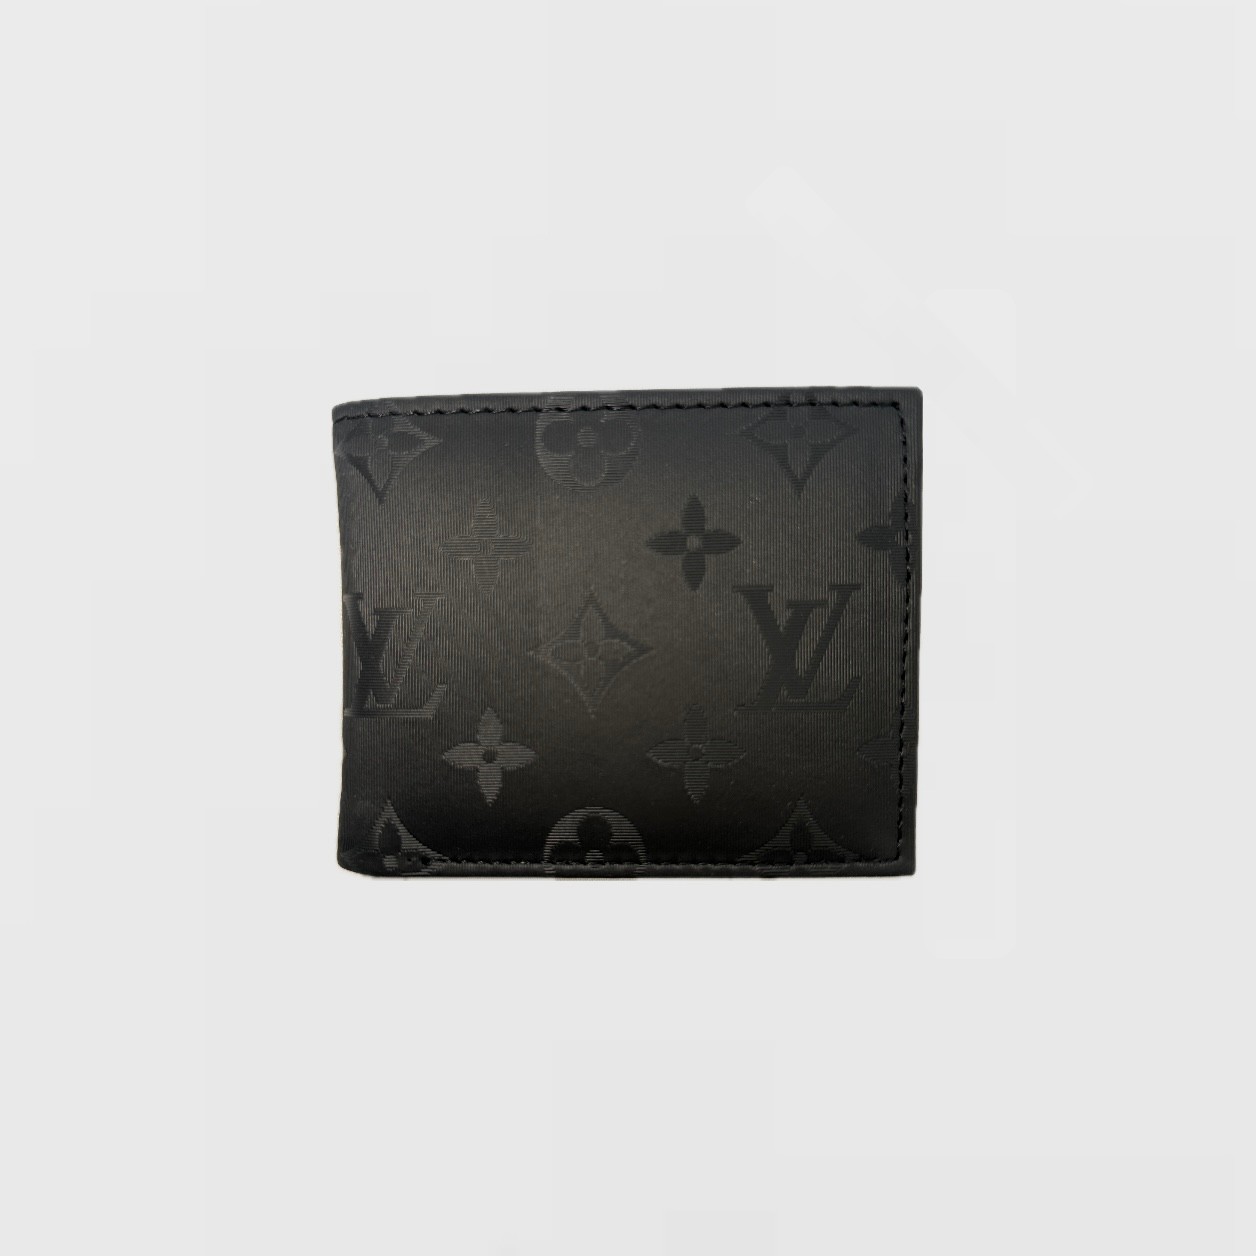 LV Sıcak Baskı Desenli Siyah Deri Cüzdan - Polyester/Baskı